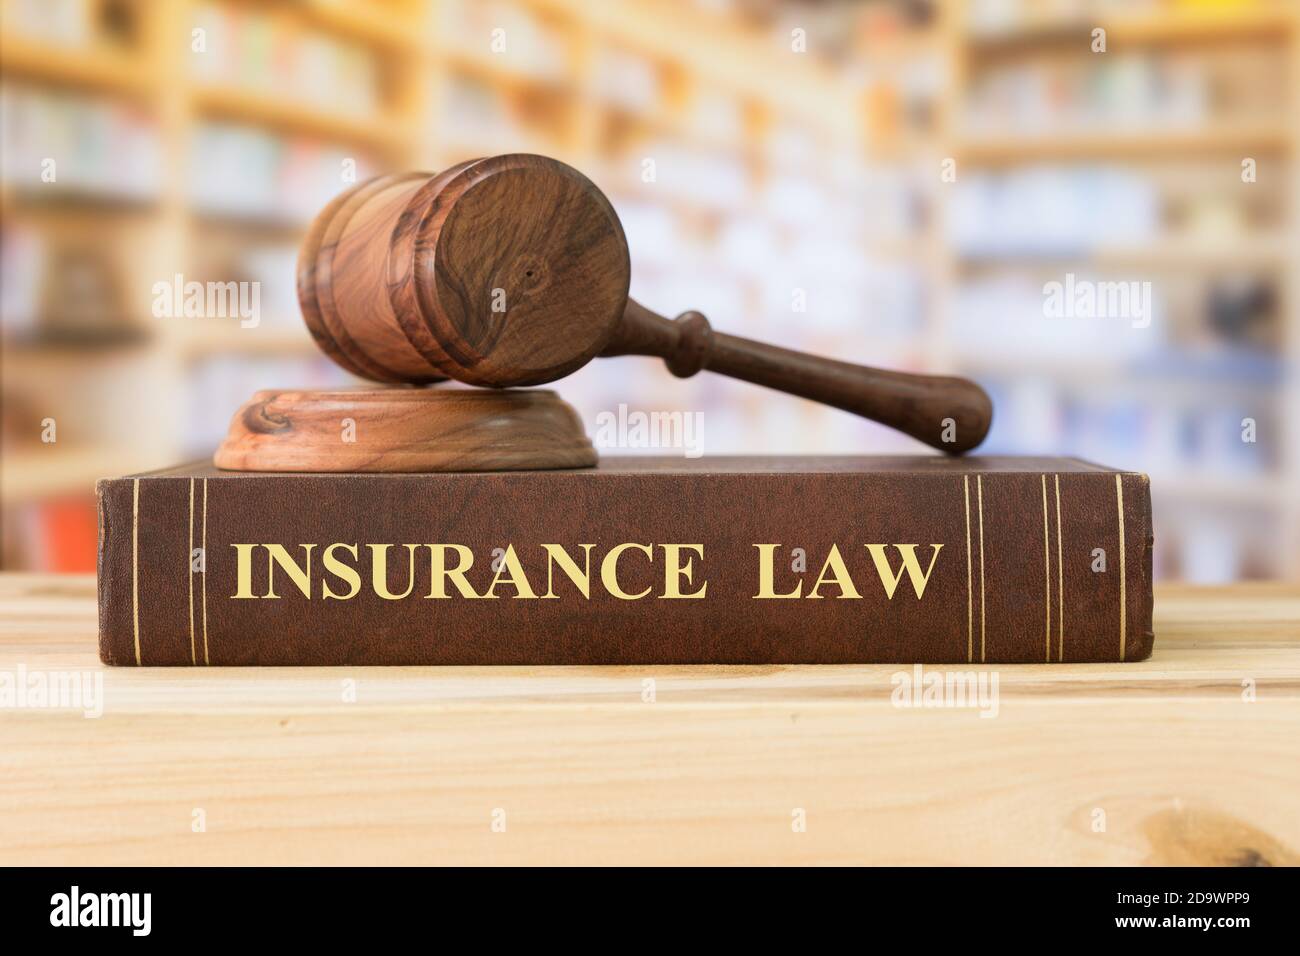 Versicherung Law Bücher mit einem Richter gavel auf dem Schreibtisch in der Bibliothek. Konzept des Versicherungsrechts, Recht, Bildung, Recht Bücher, Recht. Stockfoto